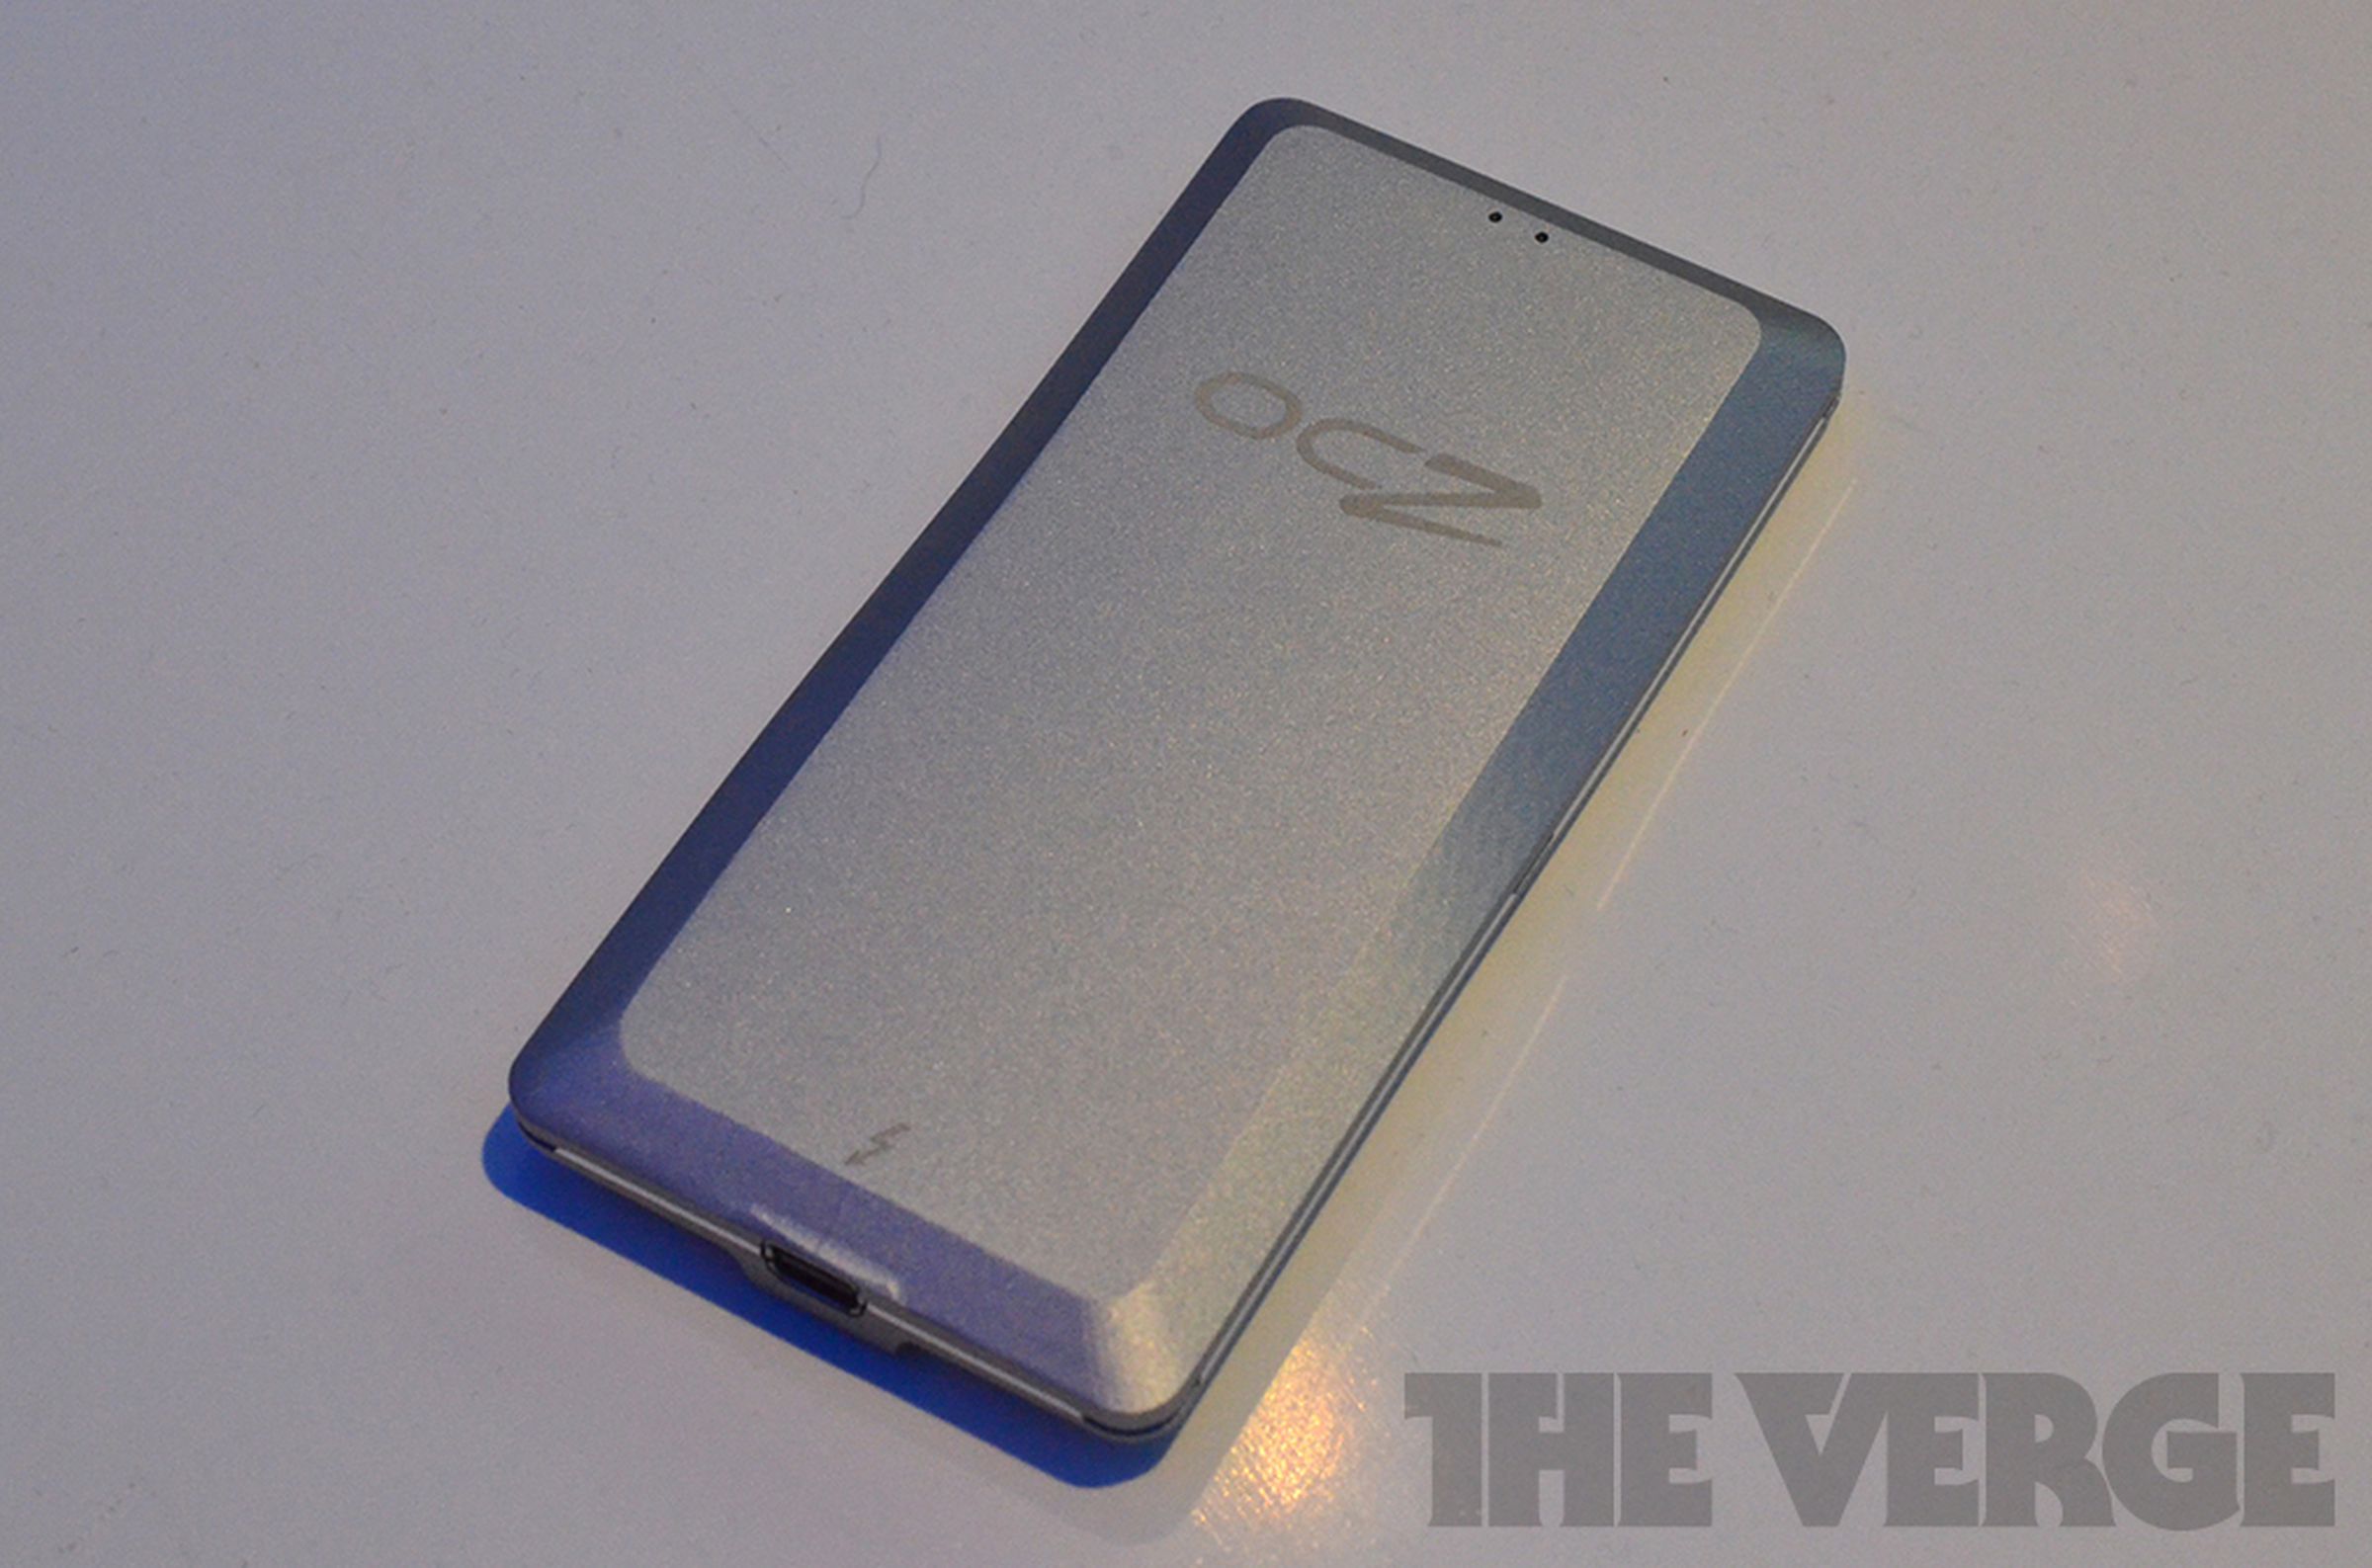 OCZ Lightfoot Thunderbolt external SSD hands-on photos